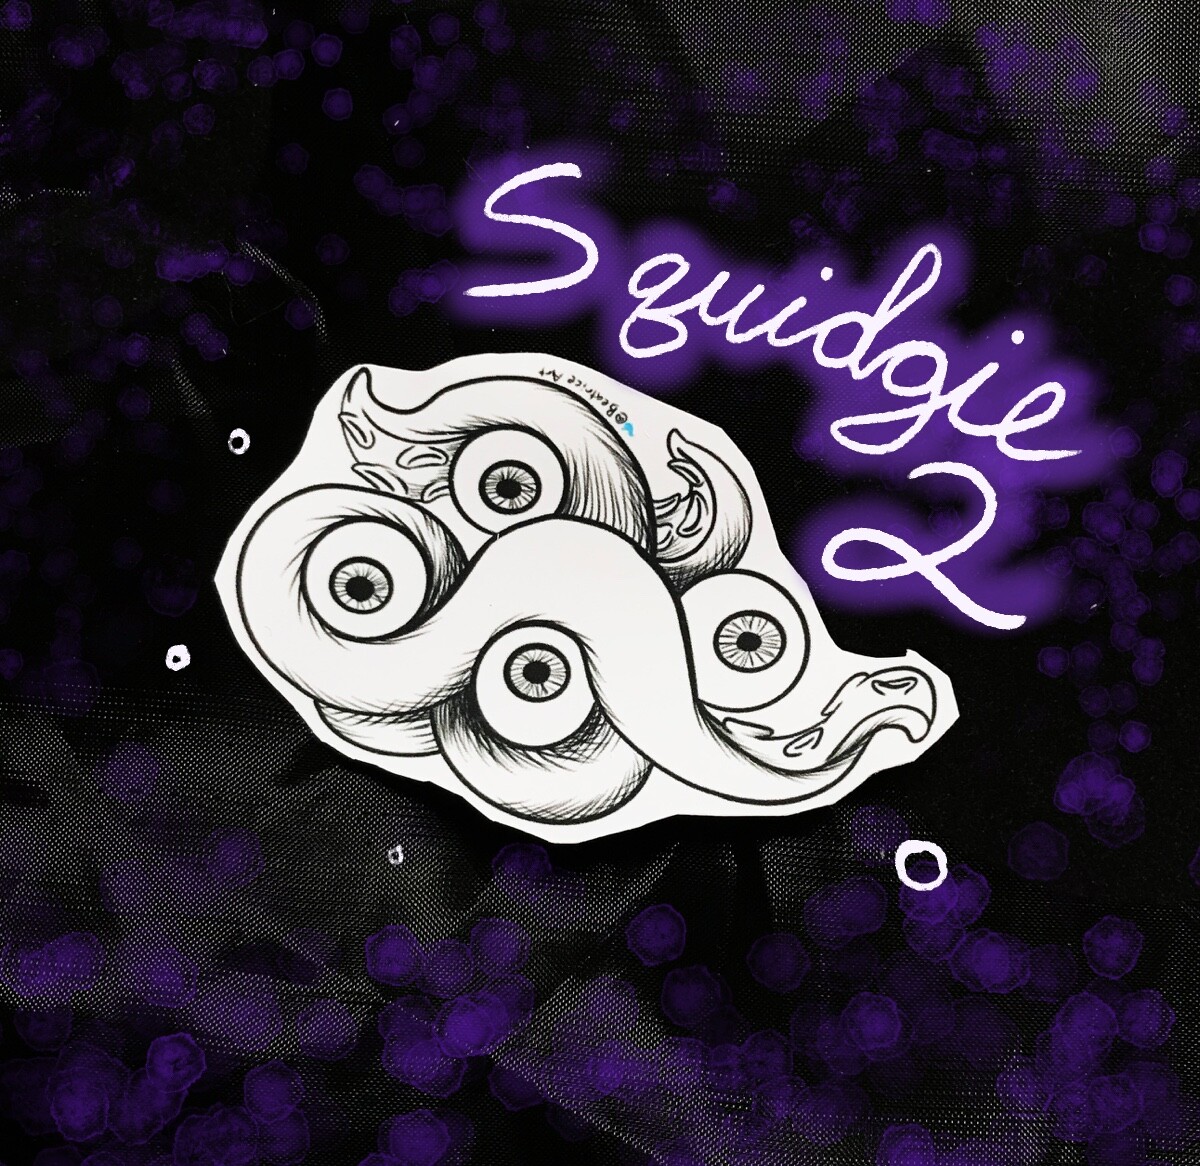 Squidgie 2, featuring 4 eyeballs.